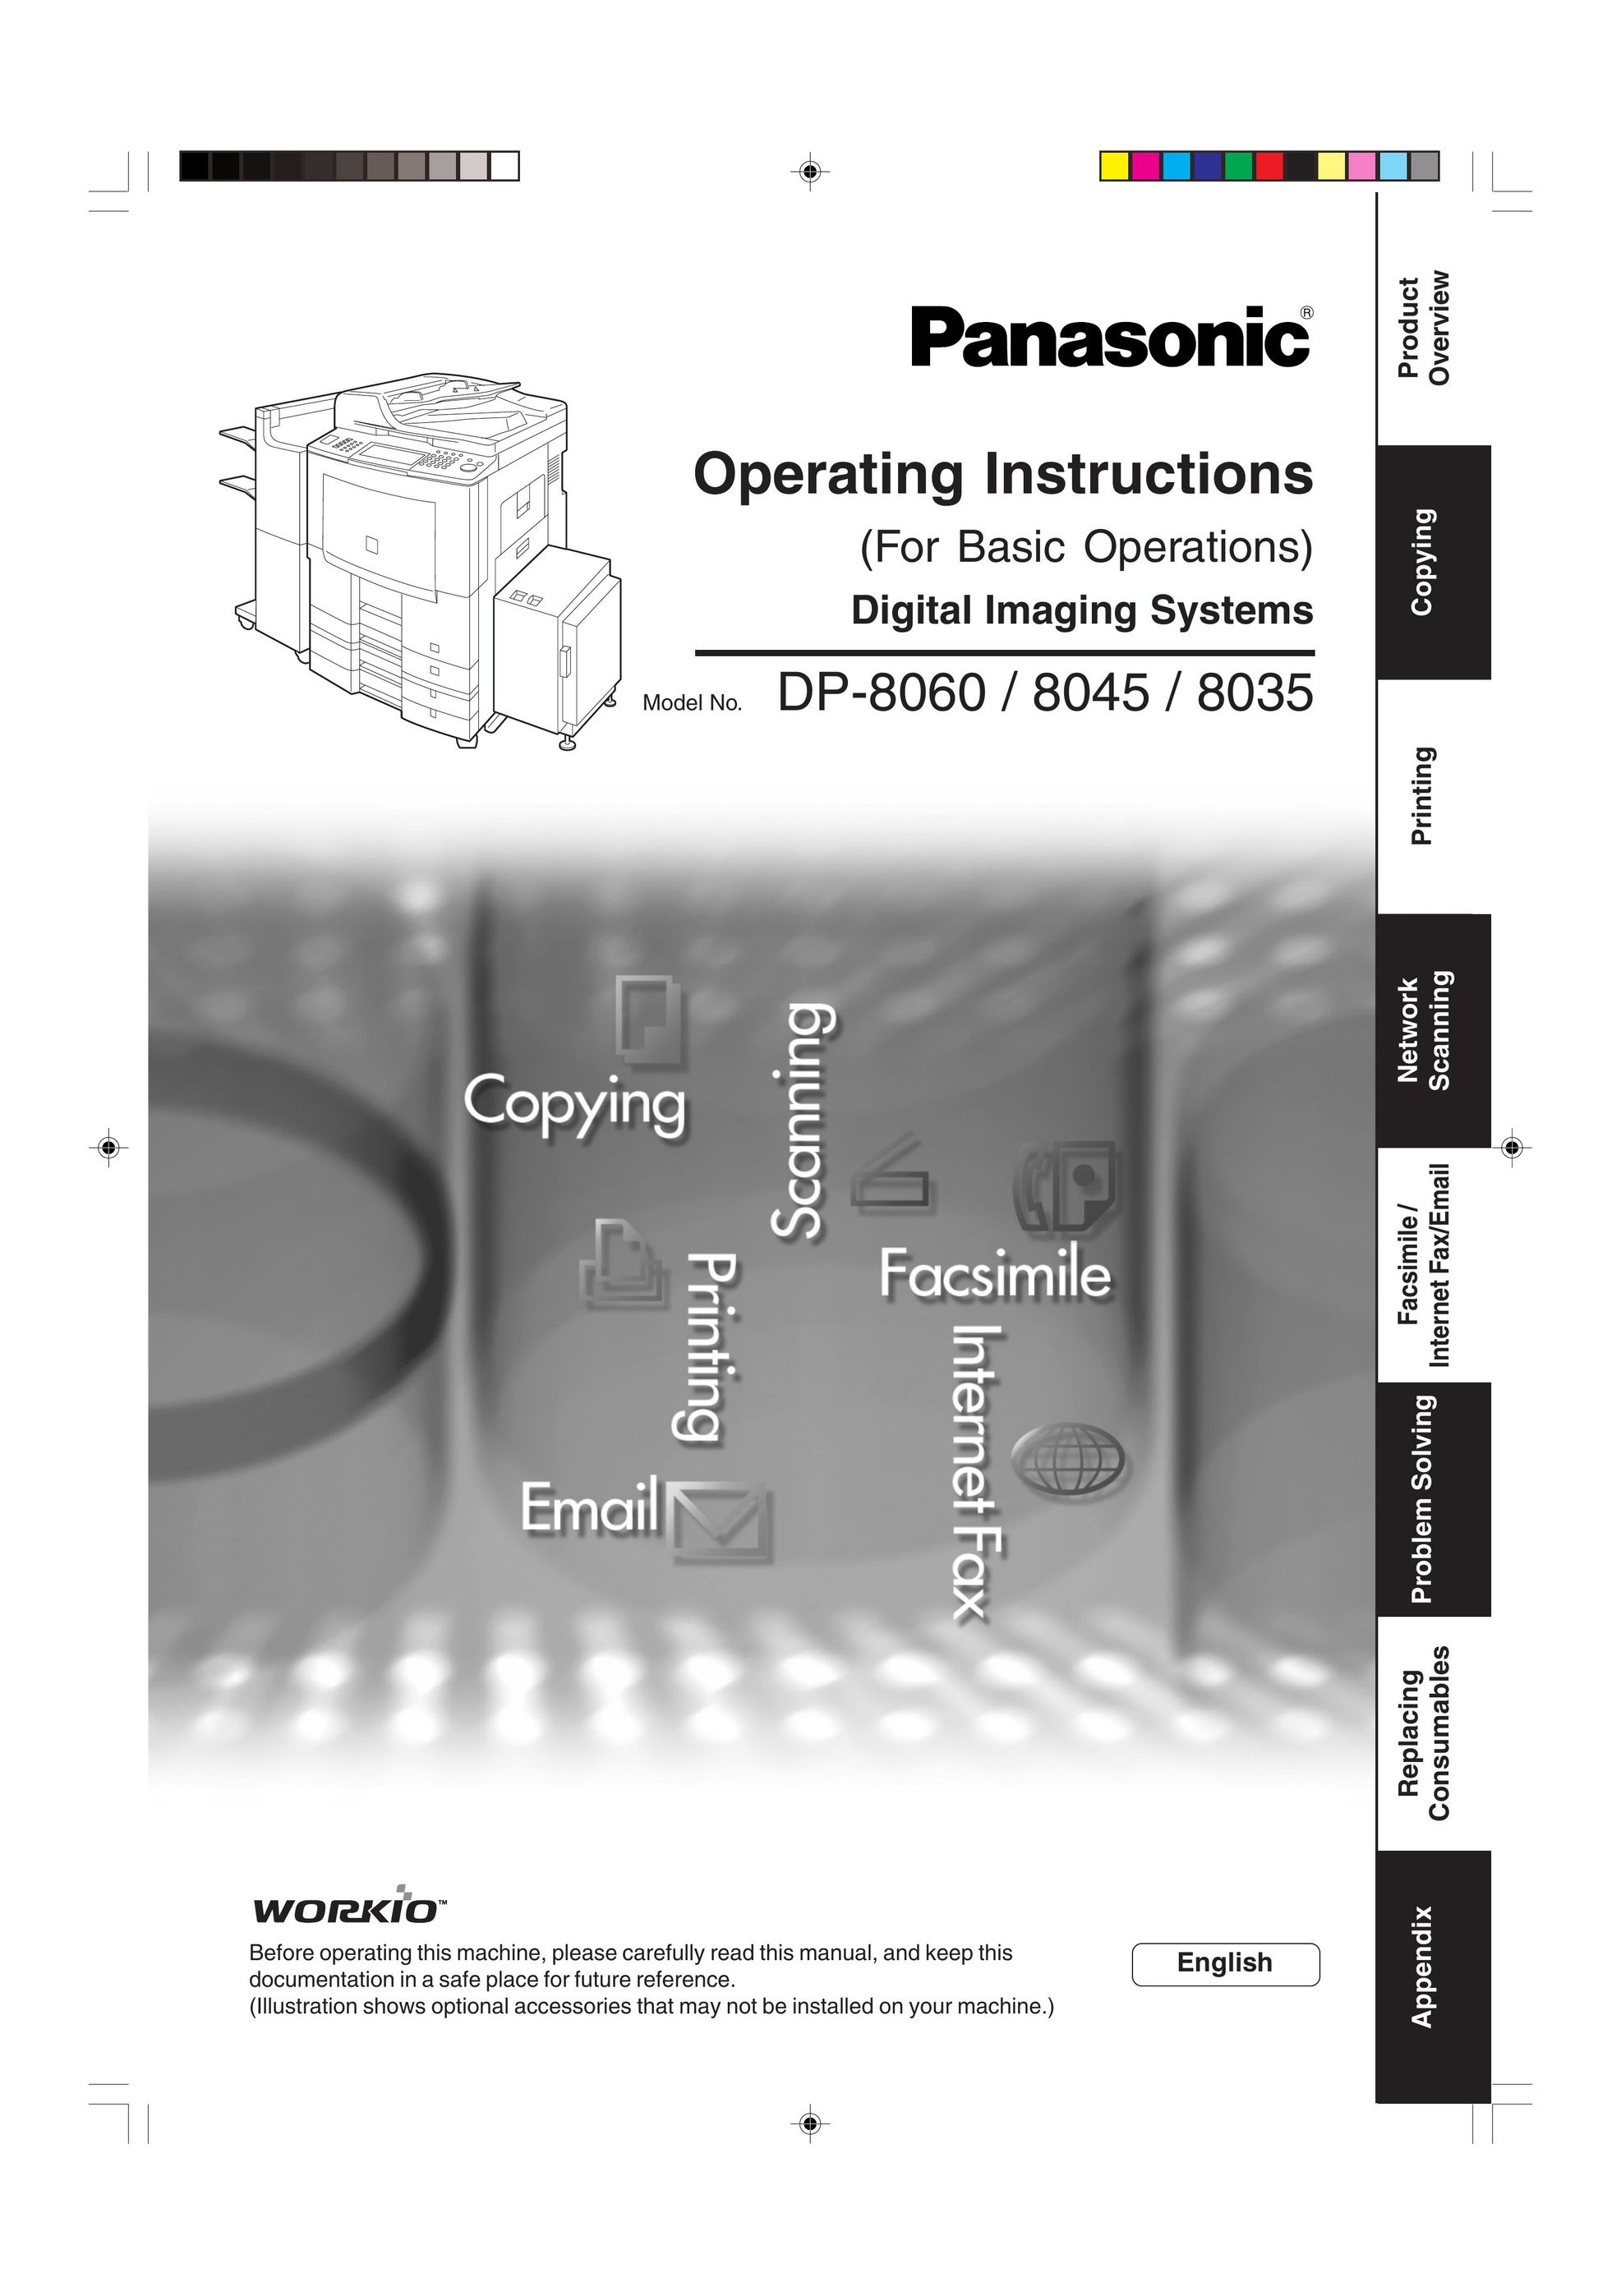 Panasonic DP-8060 All in One Printer User Manual